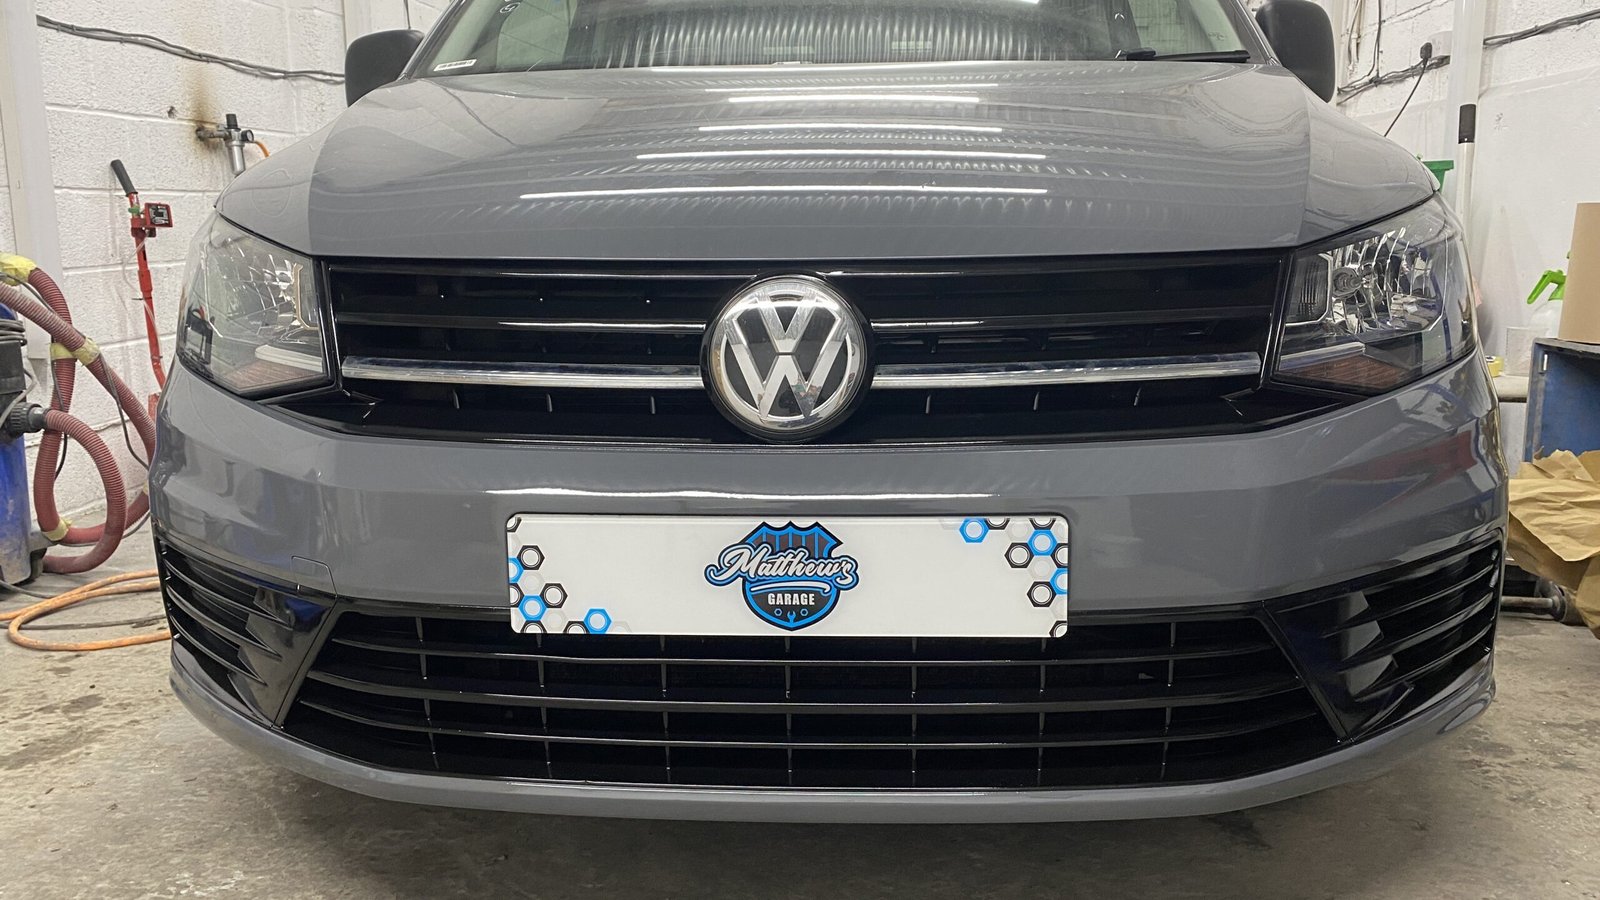 Custom body bumper repair on Volkswagen Caddy - car body repair